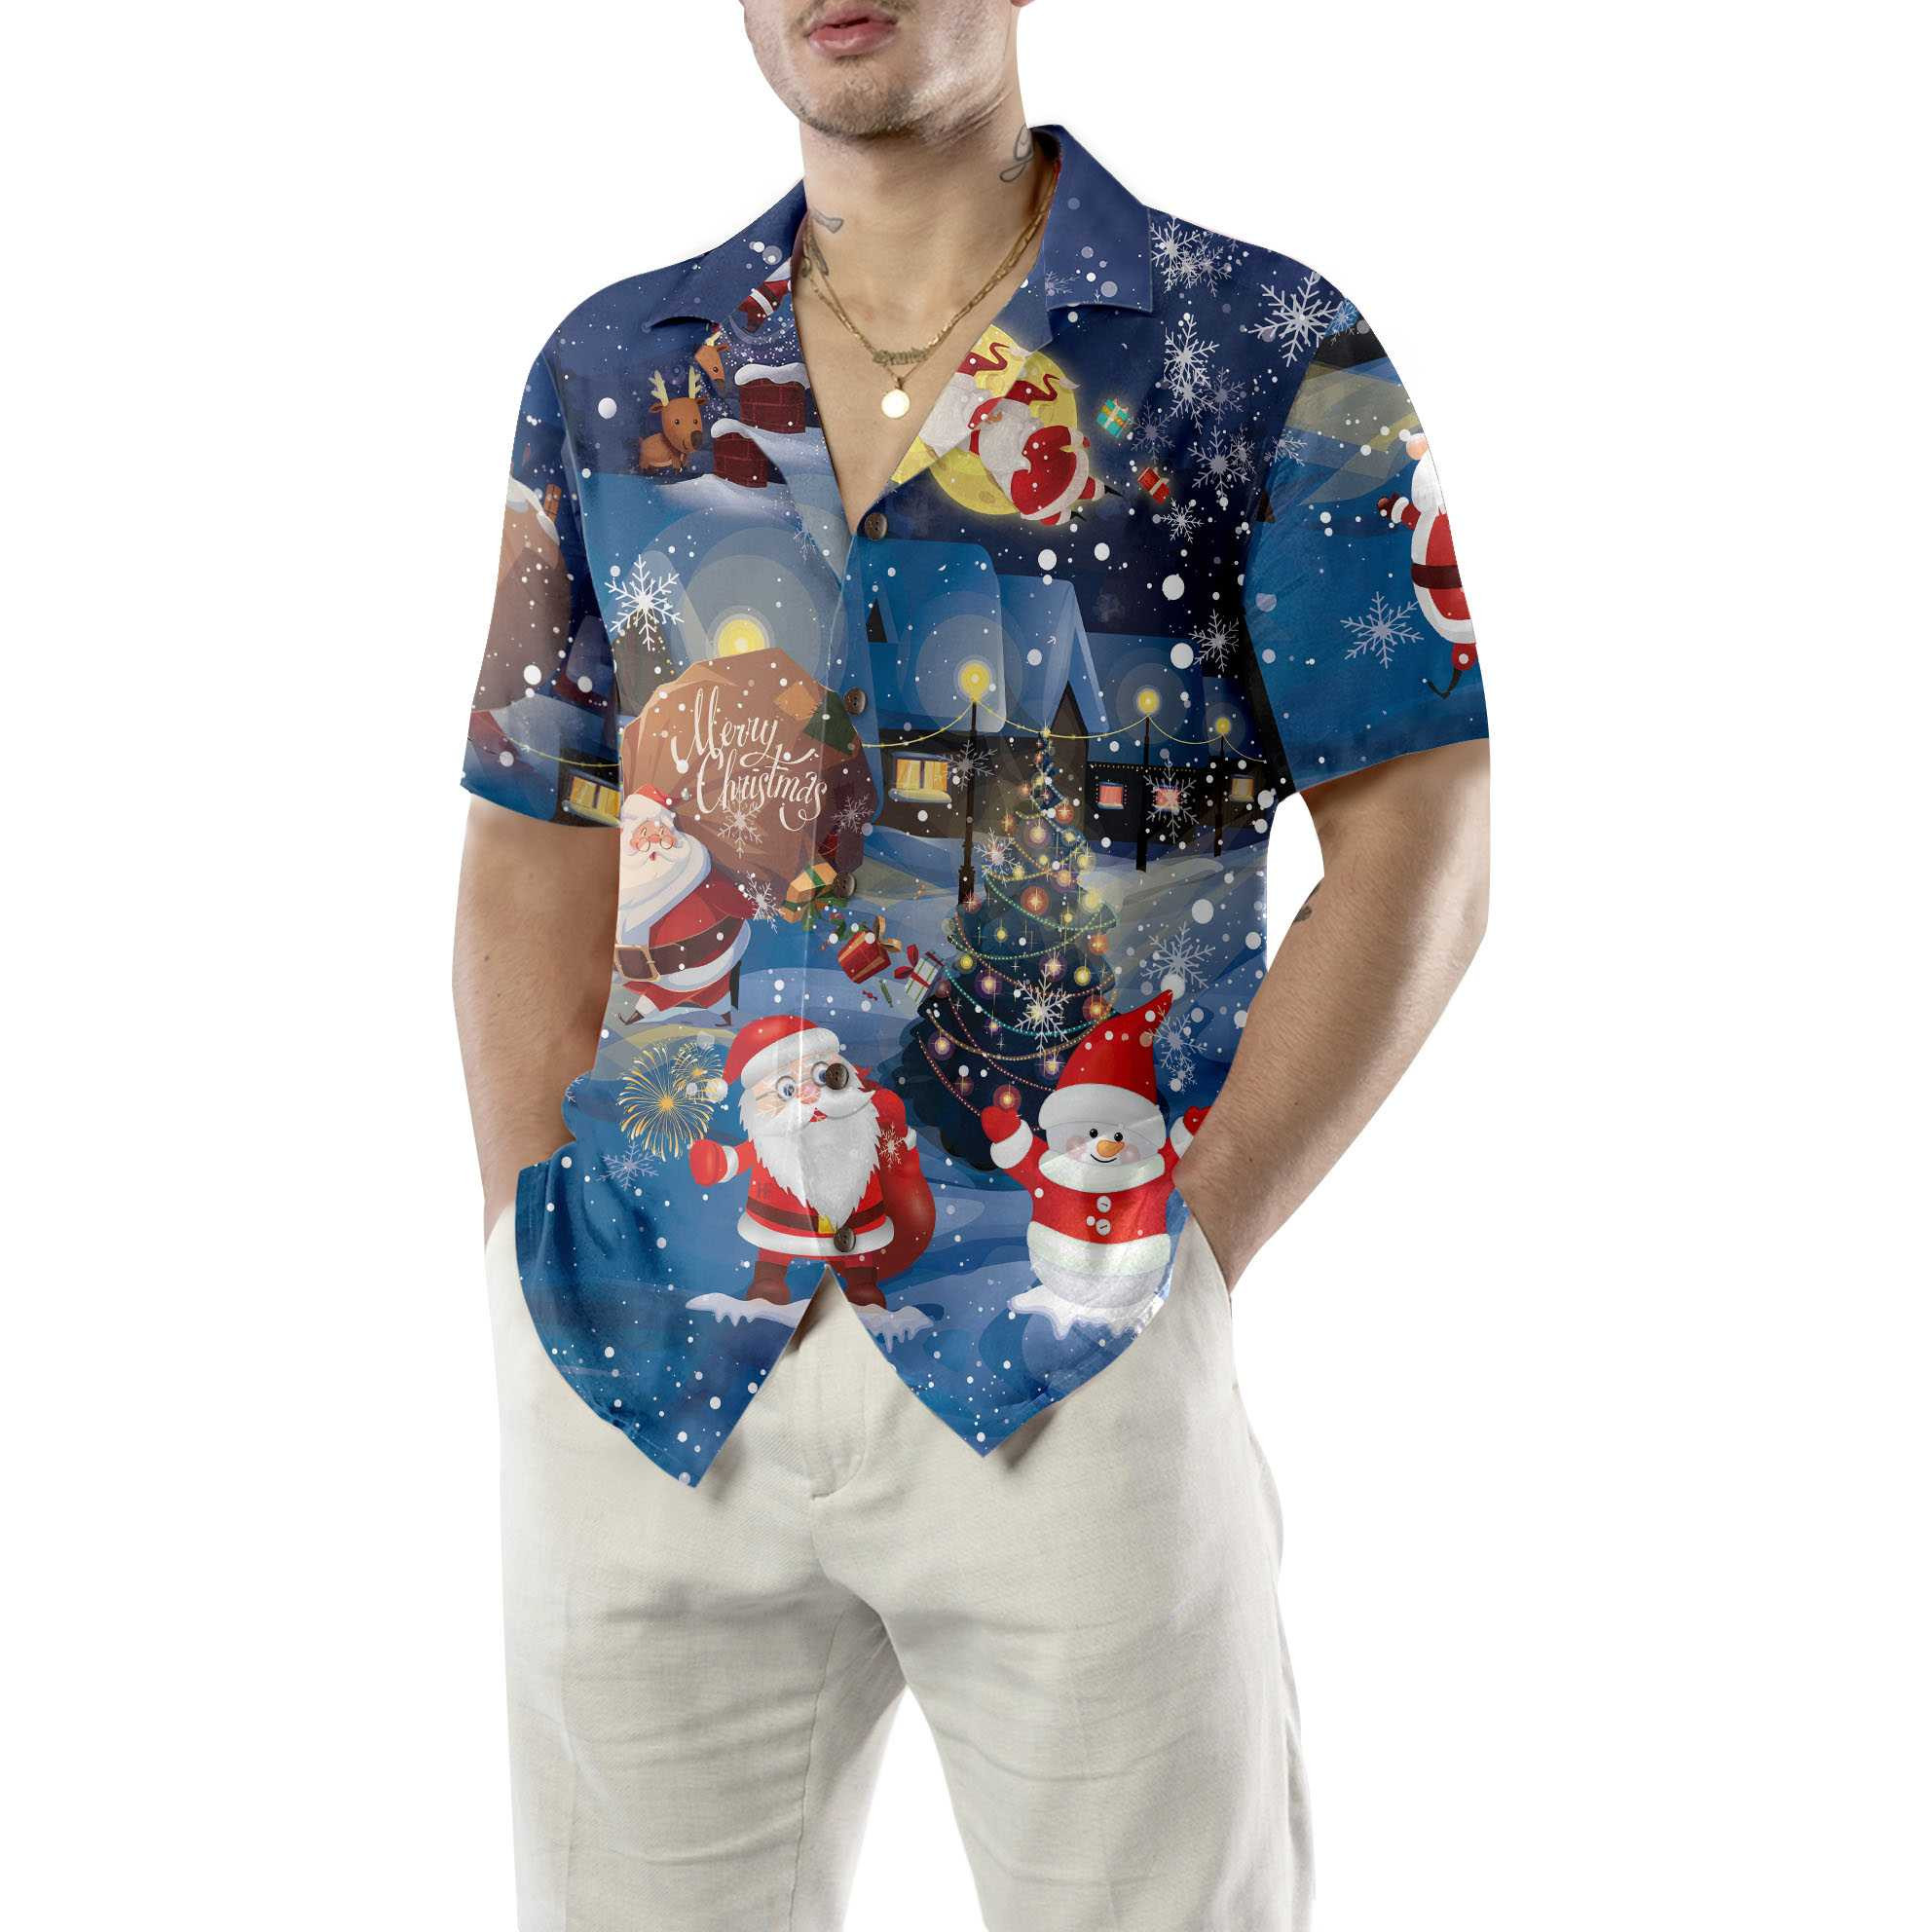 Merry Christmas Santa & Gifts Hawaiian Shirt, Funny Santa Claus Shirt, Best Gift For Christmas